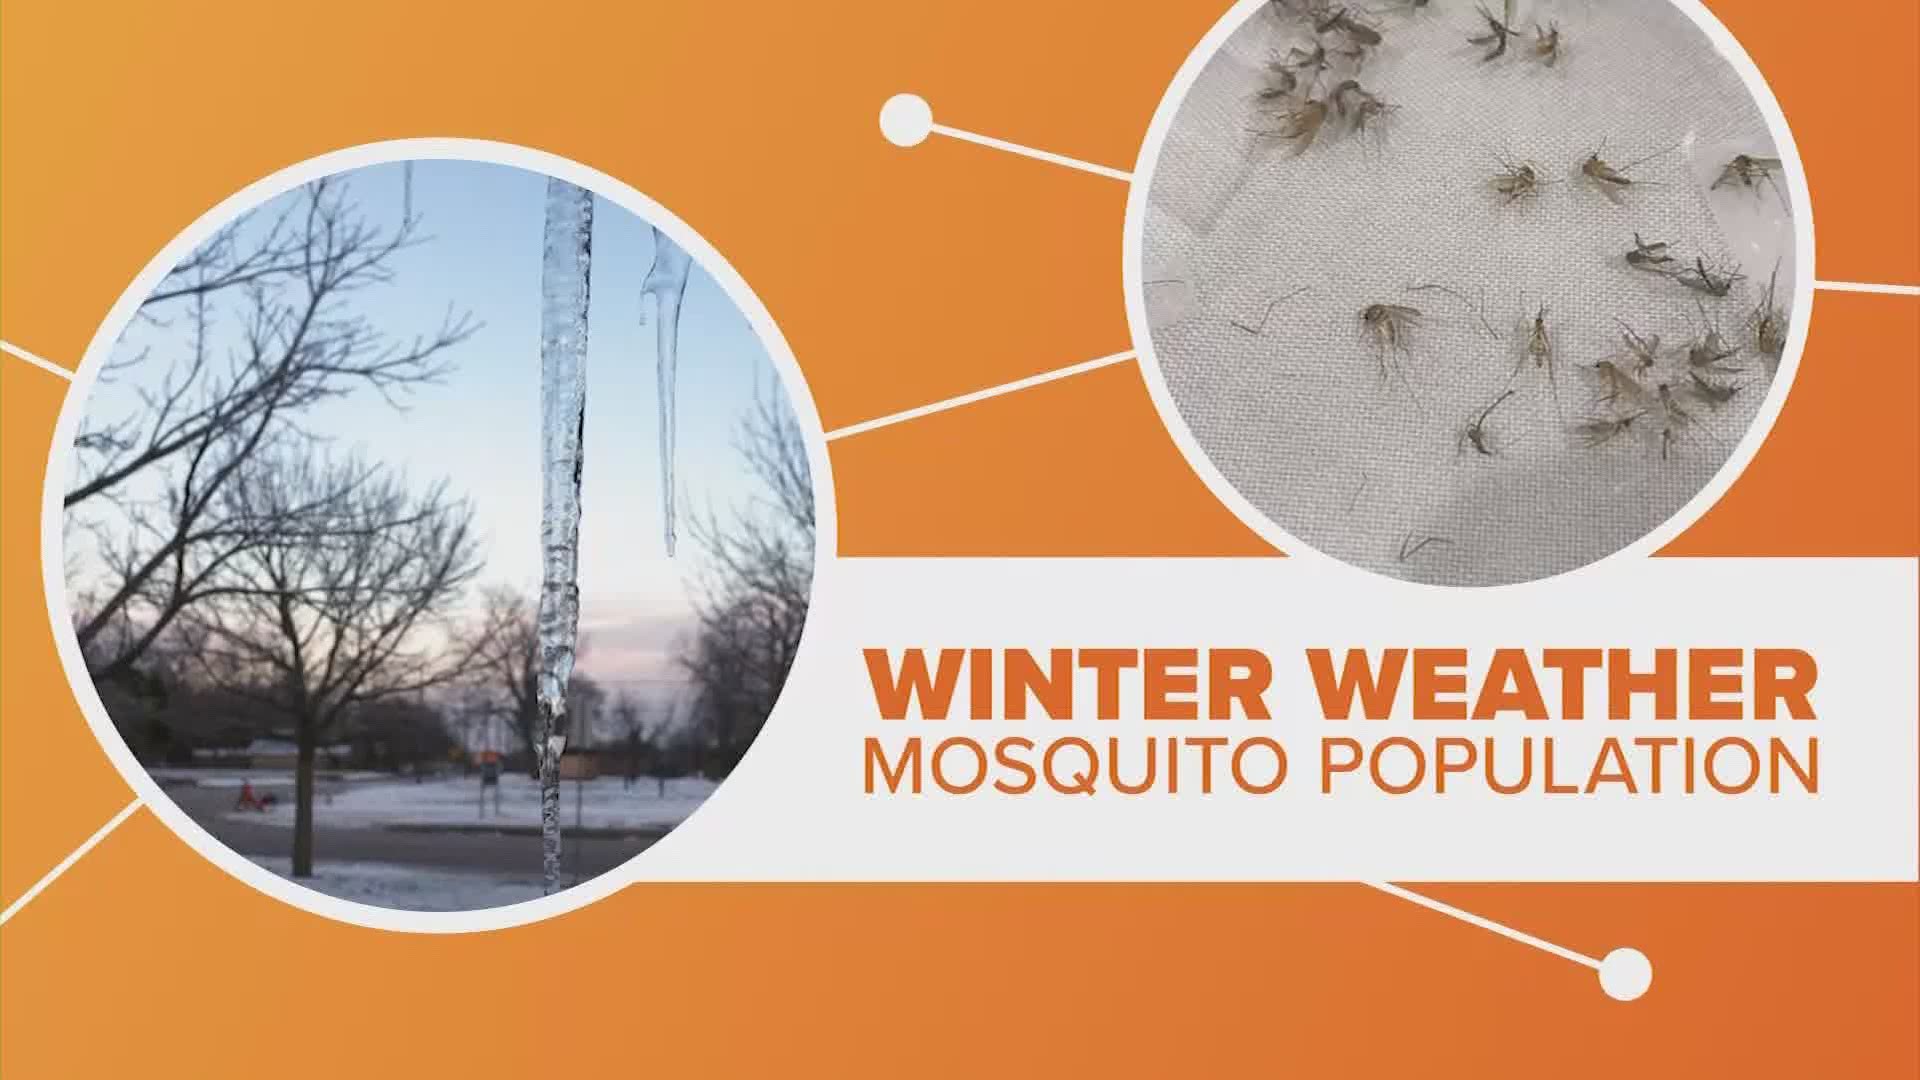 Despite the freezing temperatures, mosquitoes are survivors.